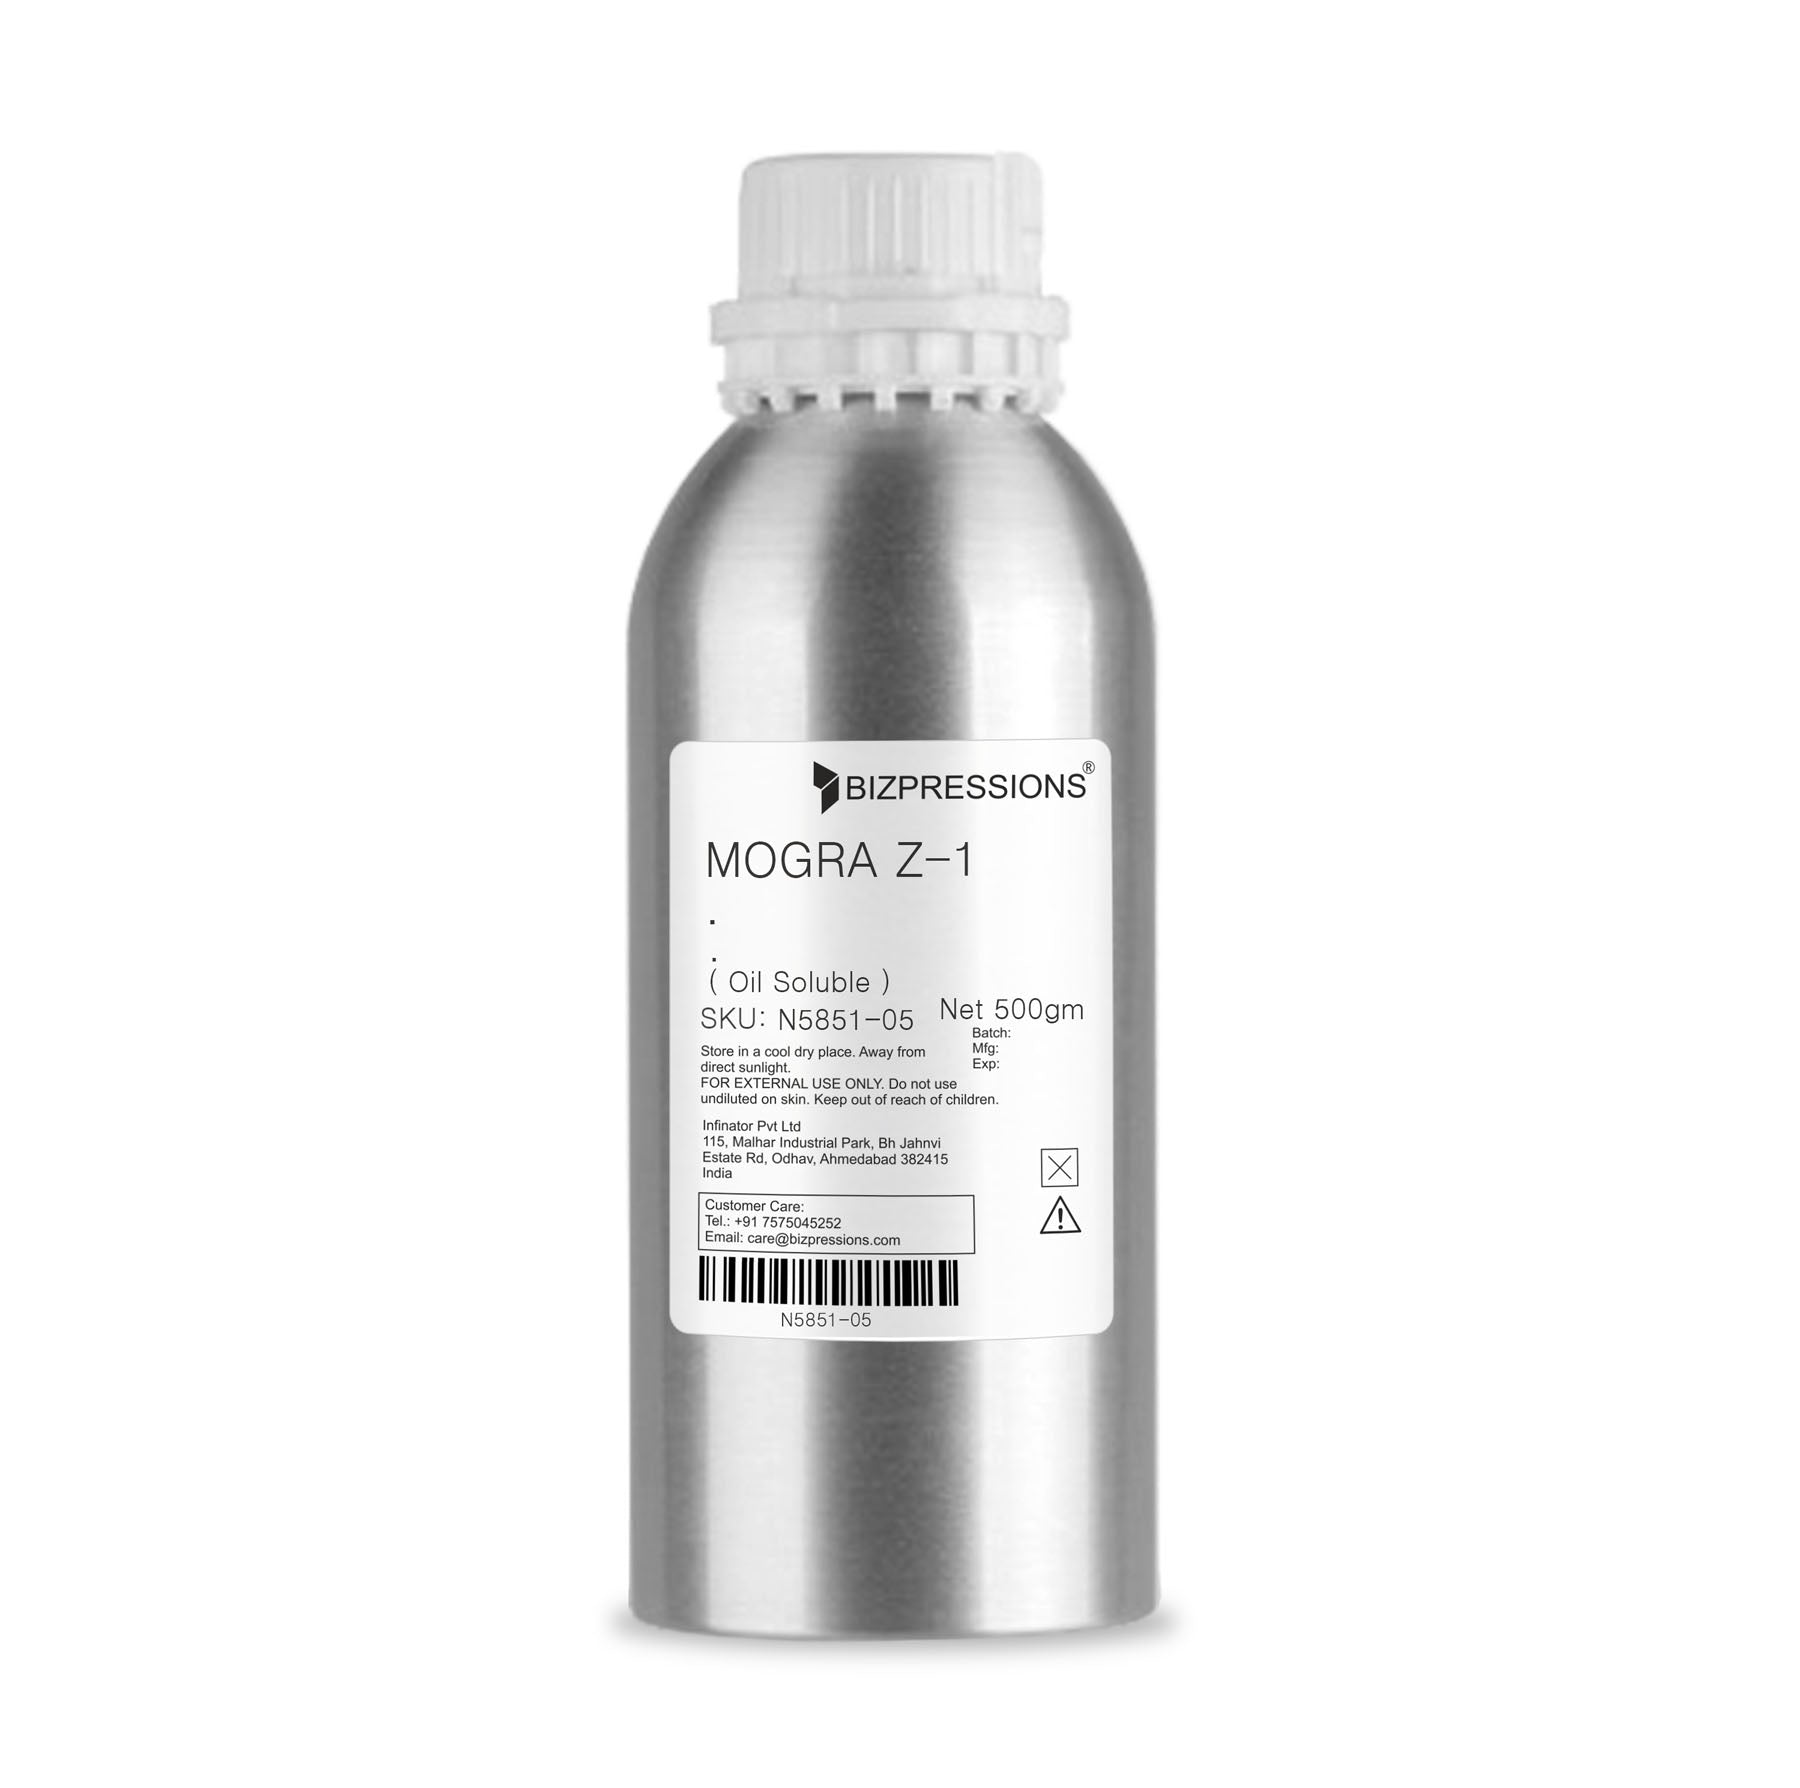 MOGRA Z-1 - Fragrance ( Oil Soluble ) - 500 gm